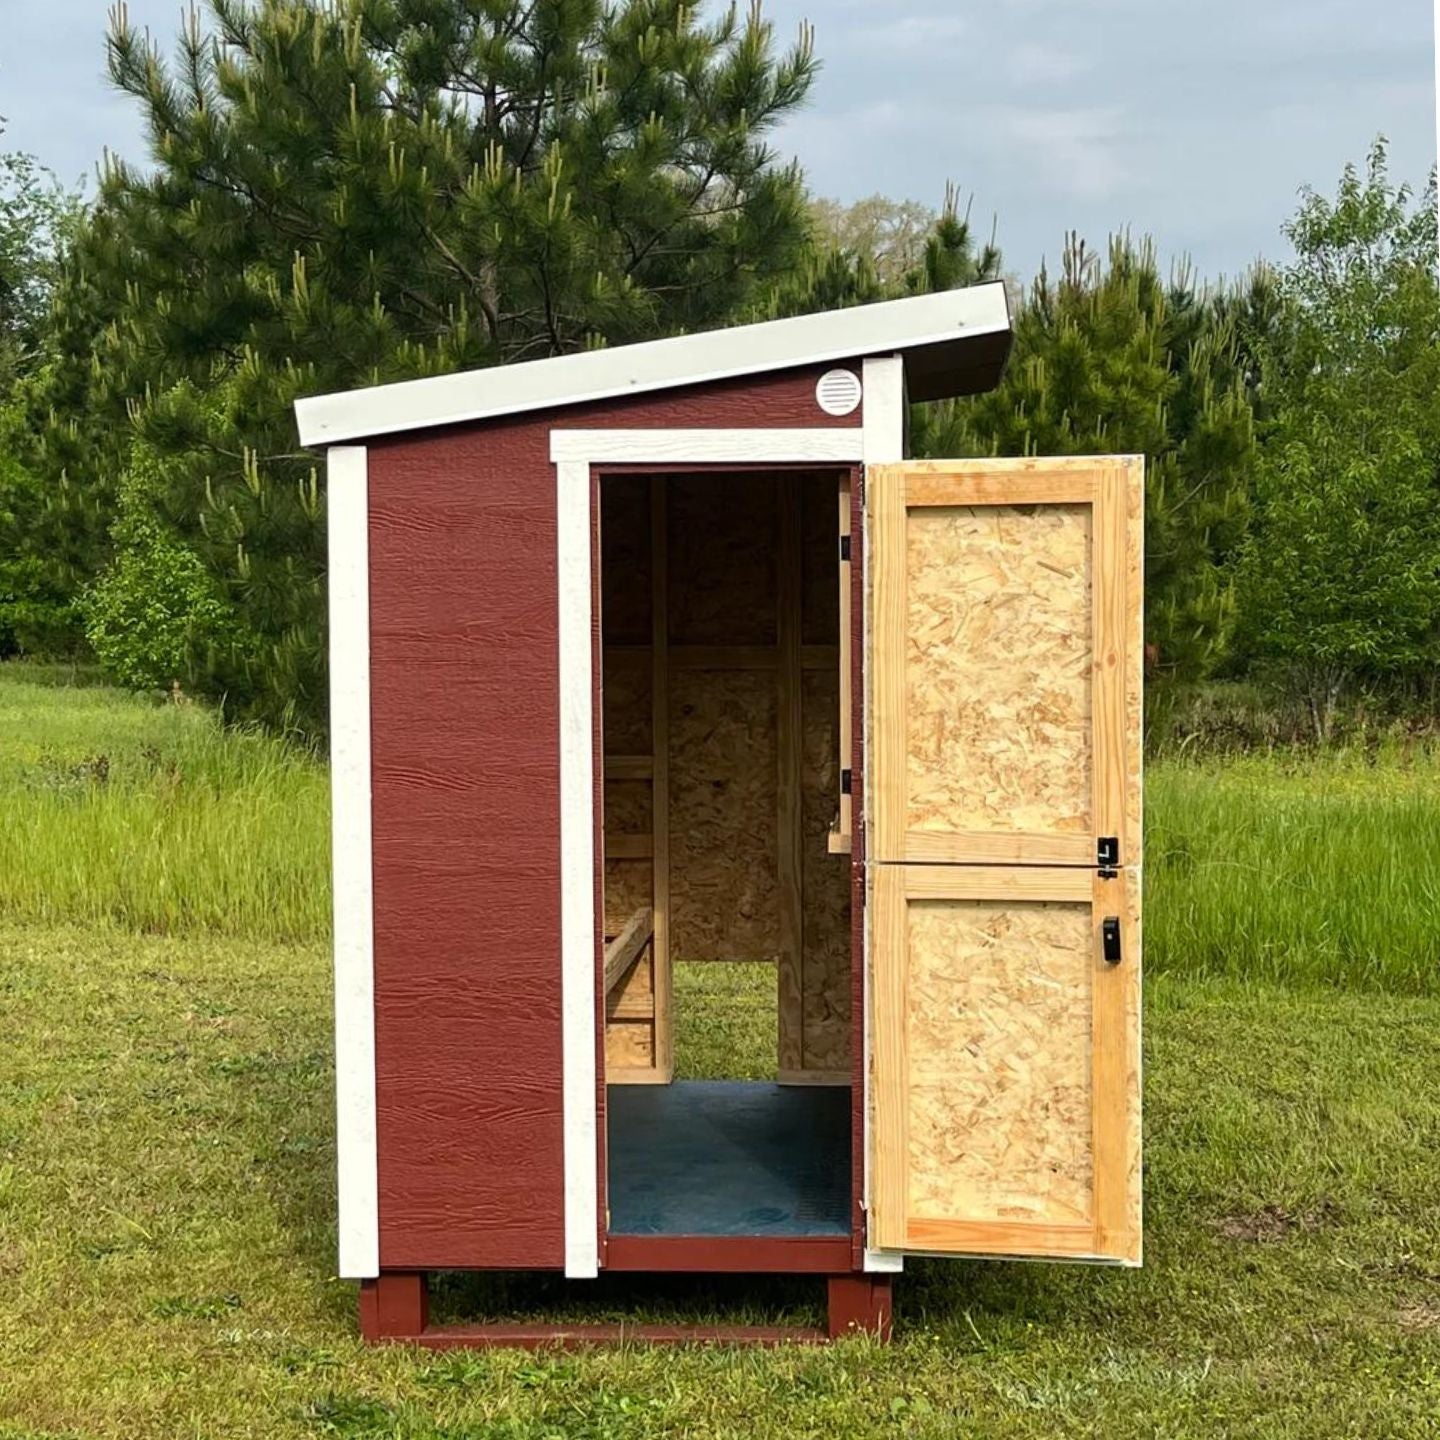 OverEZ Walk-In Chicken Coop with Dutch Door for humans